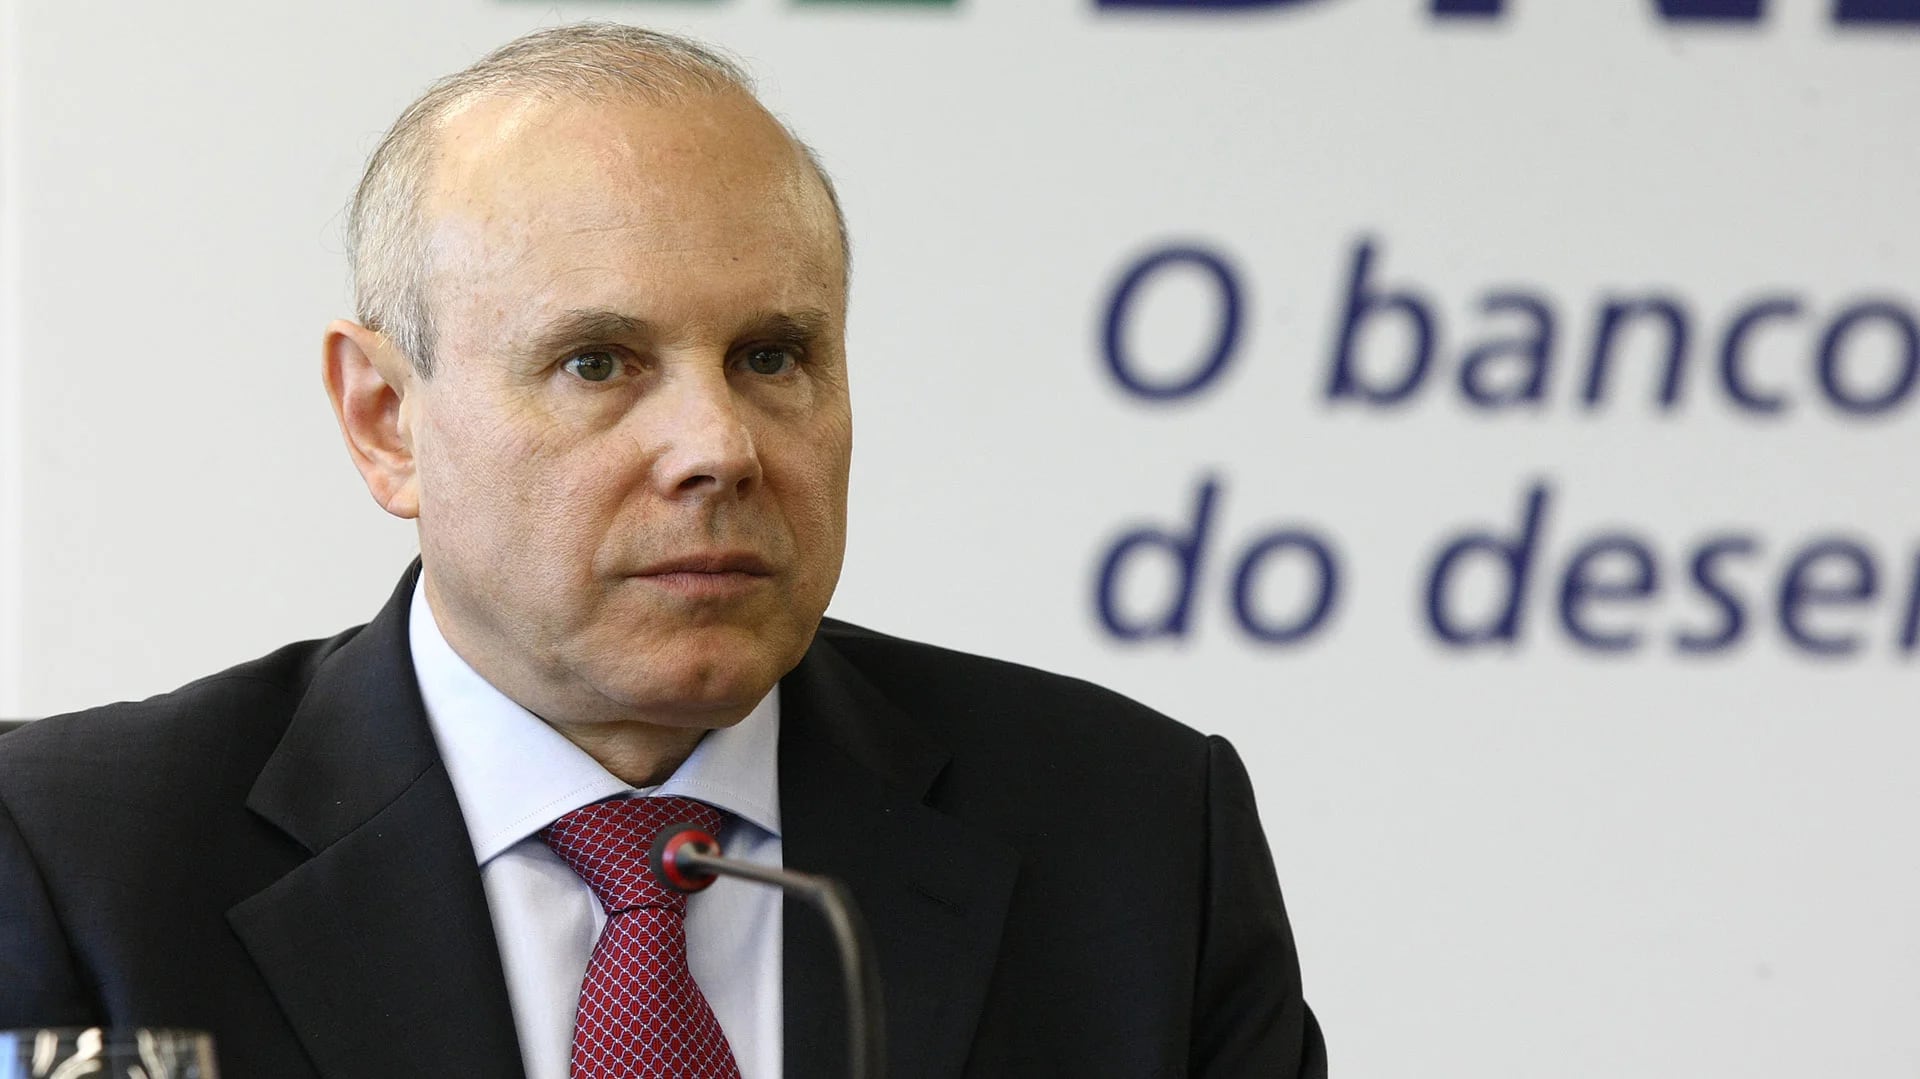 El ex ministro de Hacienda brasileño Guido Mantega